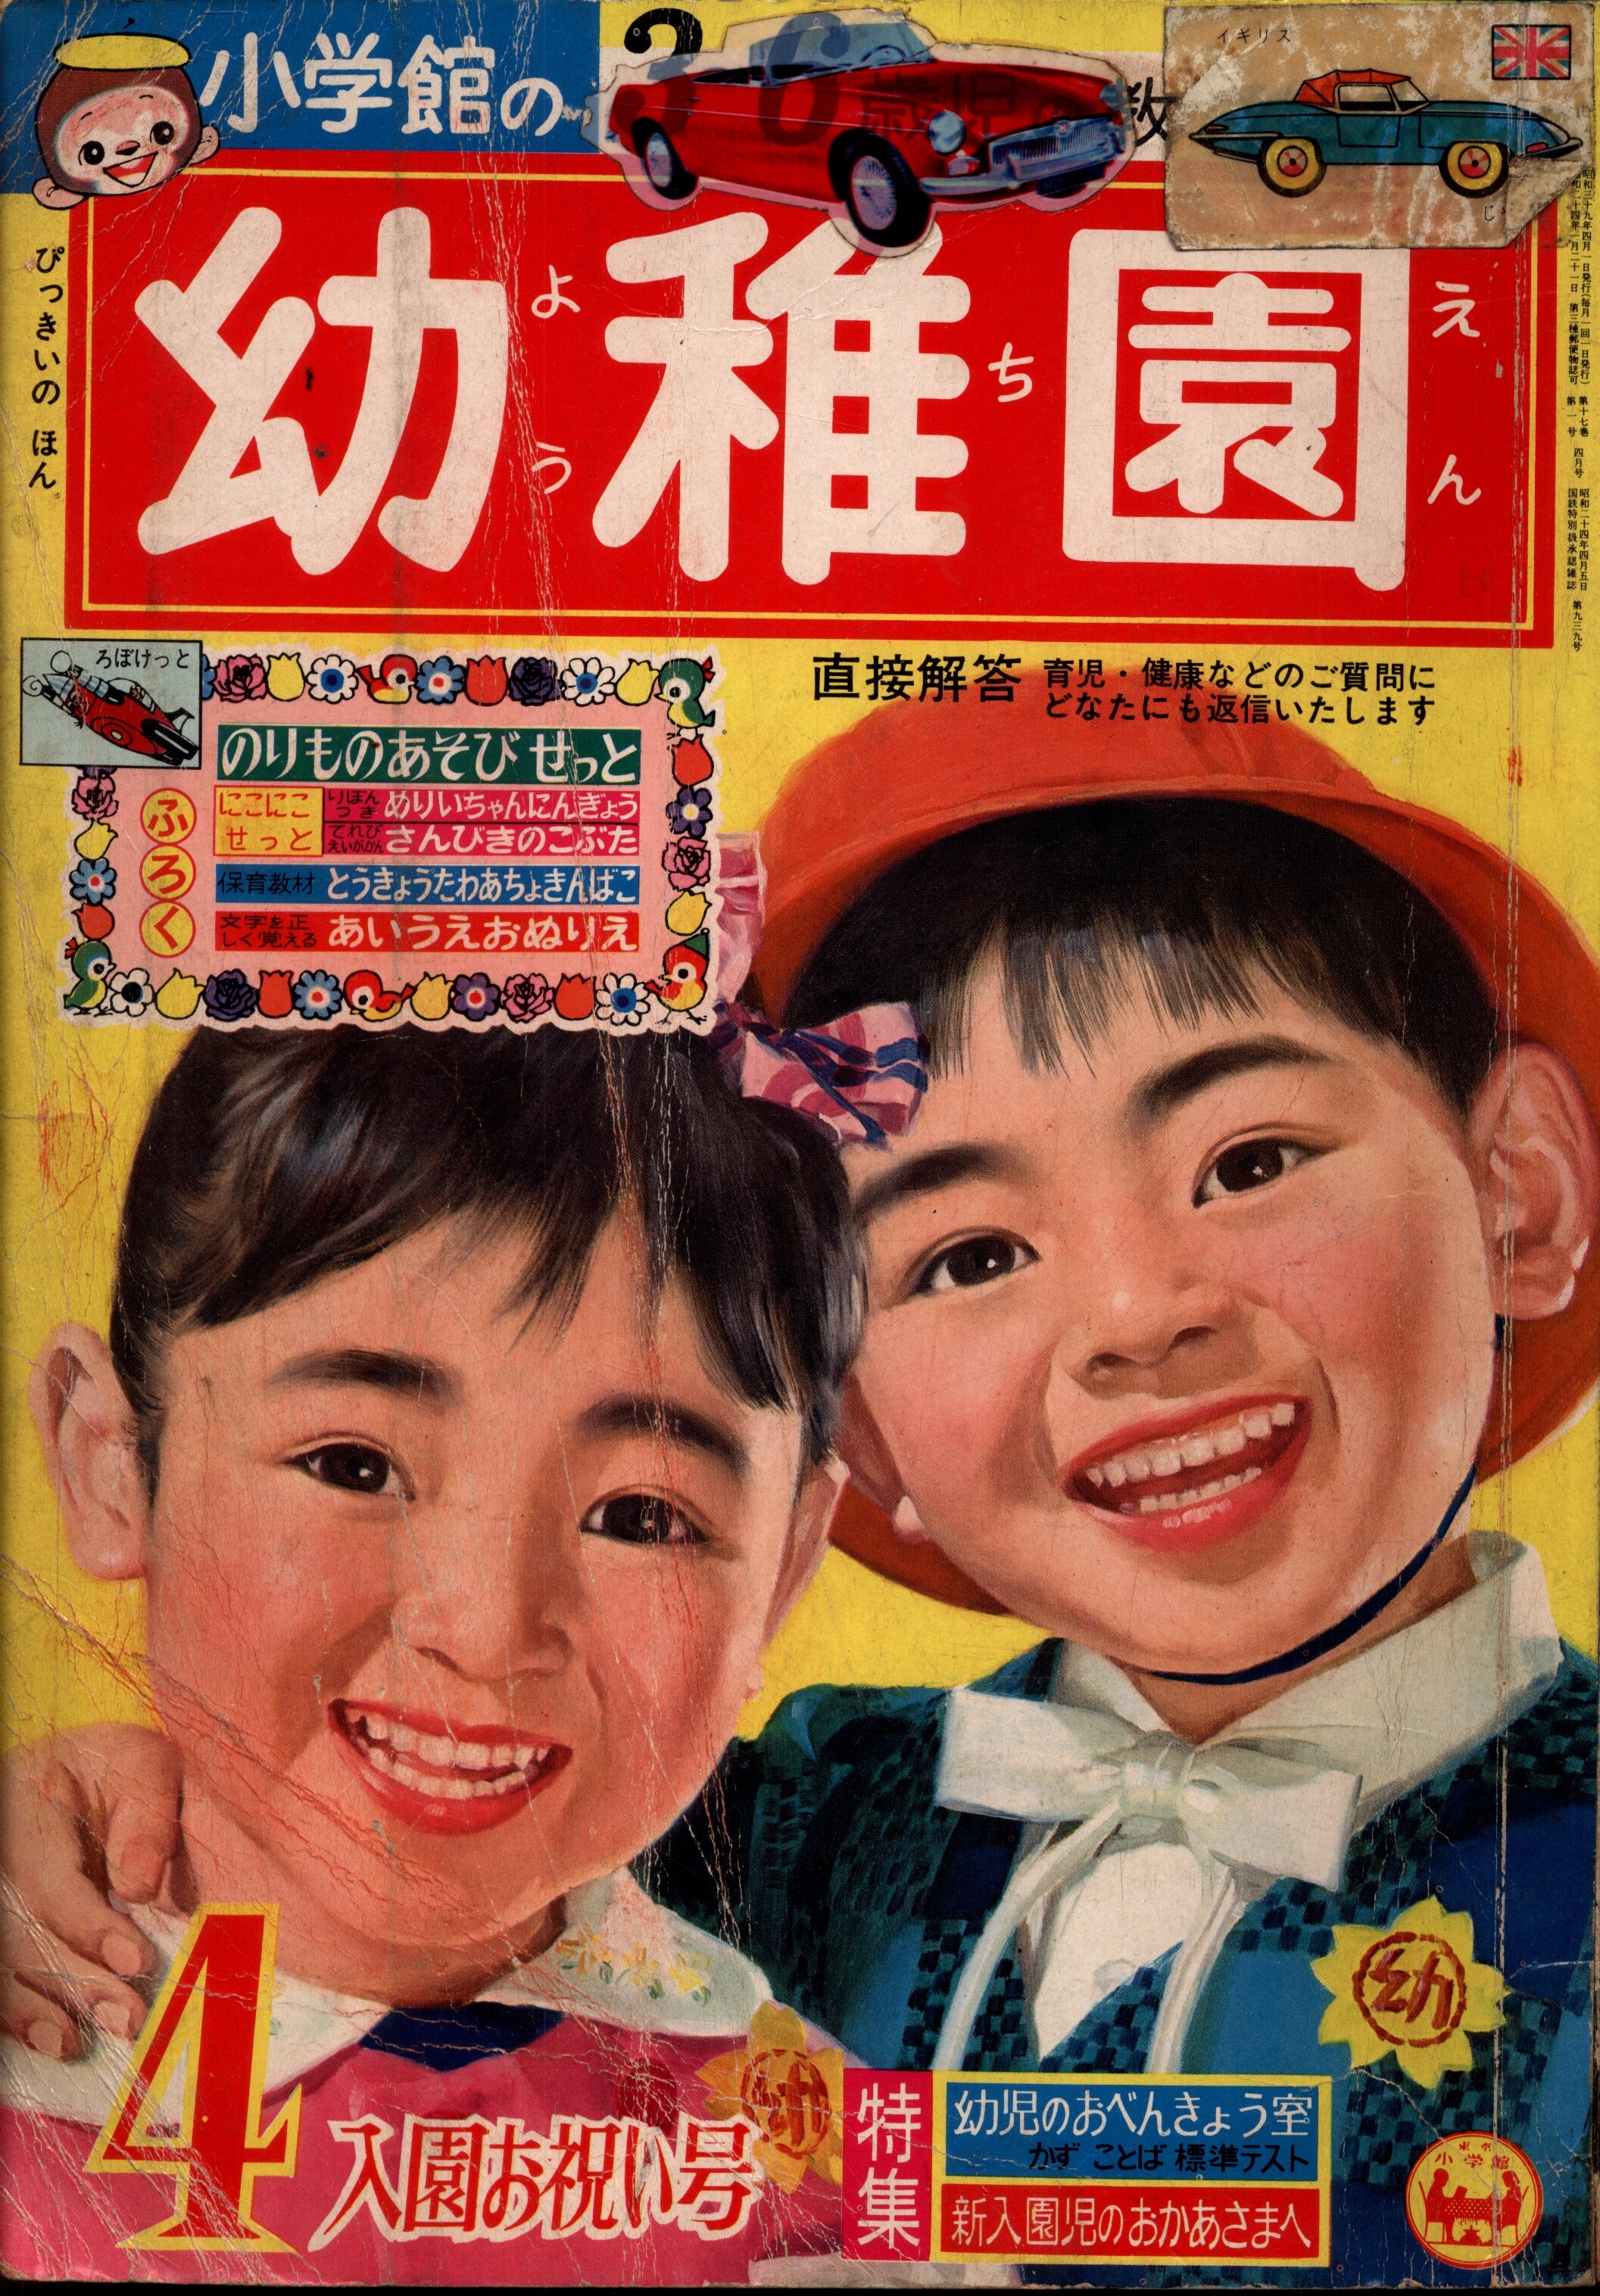 小学館　幼稚園1964年(昭和39年)04　まんだらけ　1964年(昭和39年)の漫画雑誌　6404　Mandarake